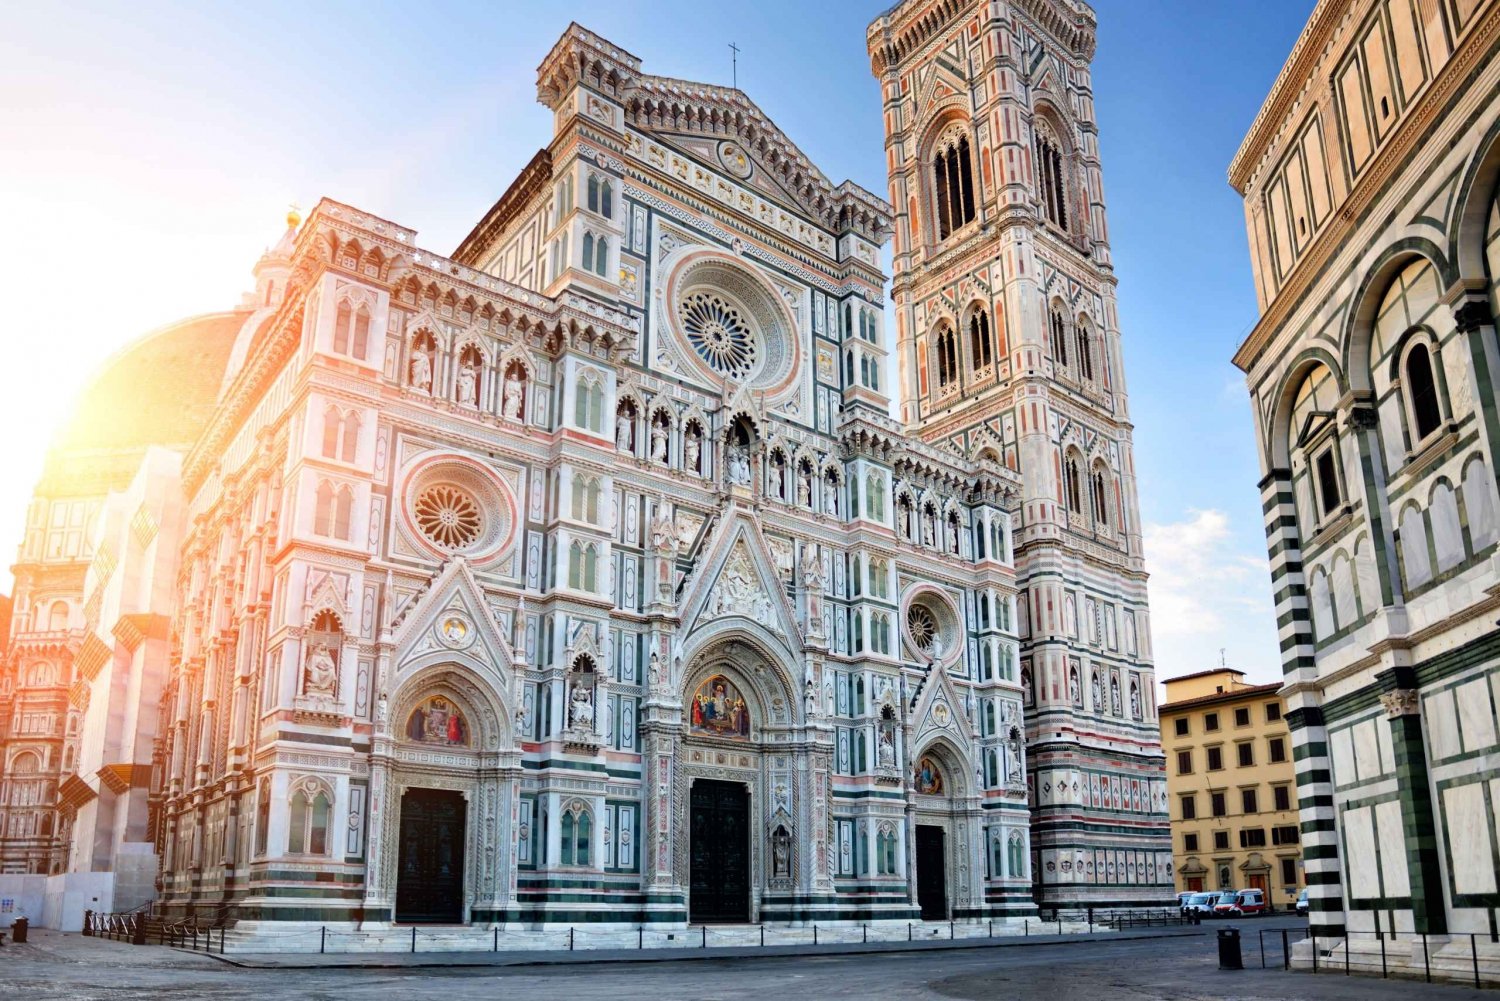 Florença: Visita ao Museu Duomo e subida à Cúpula de Brunelleschi